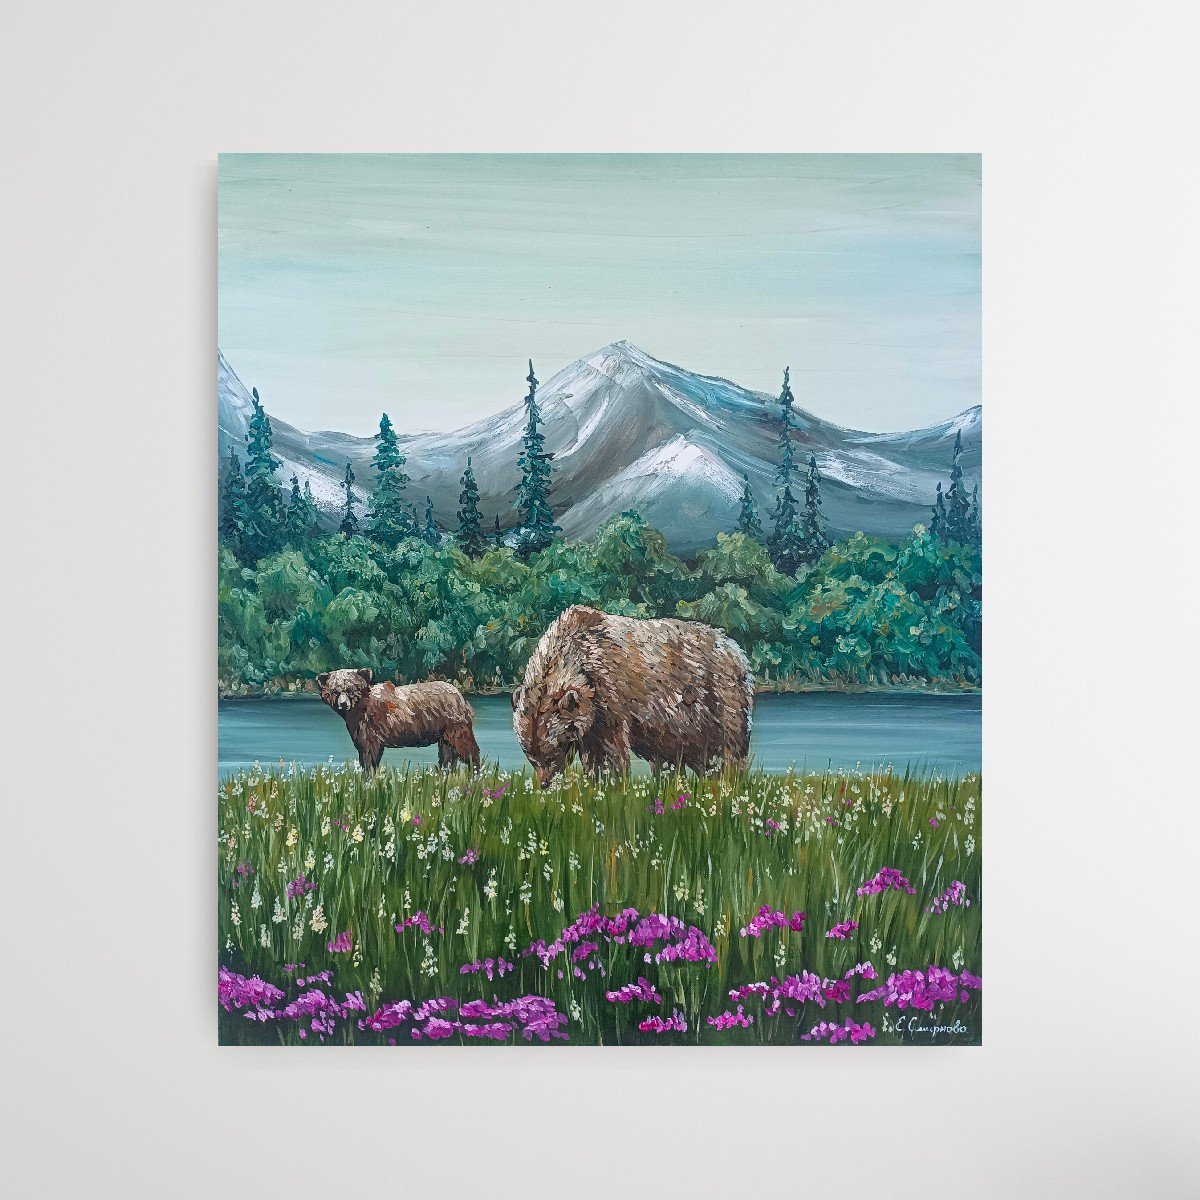 Landscape with bears by Evgenia Smirnova